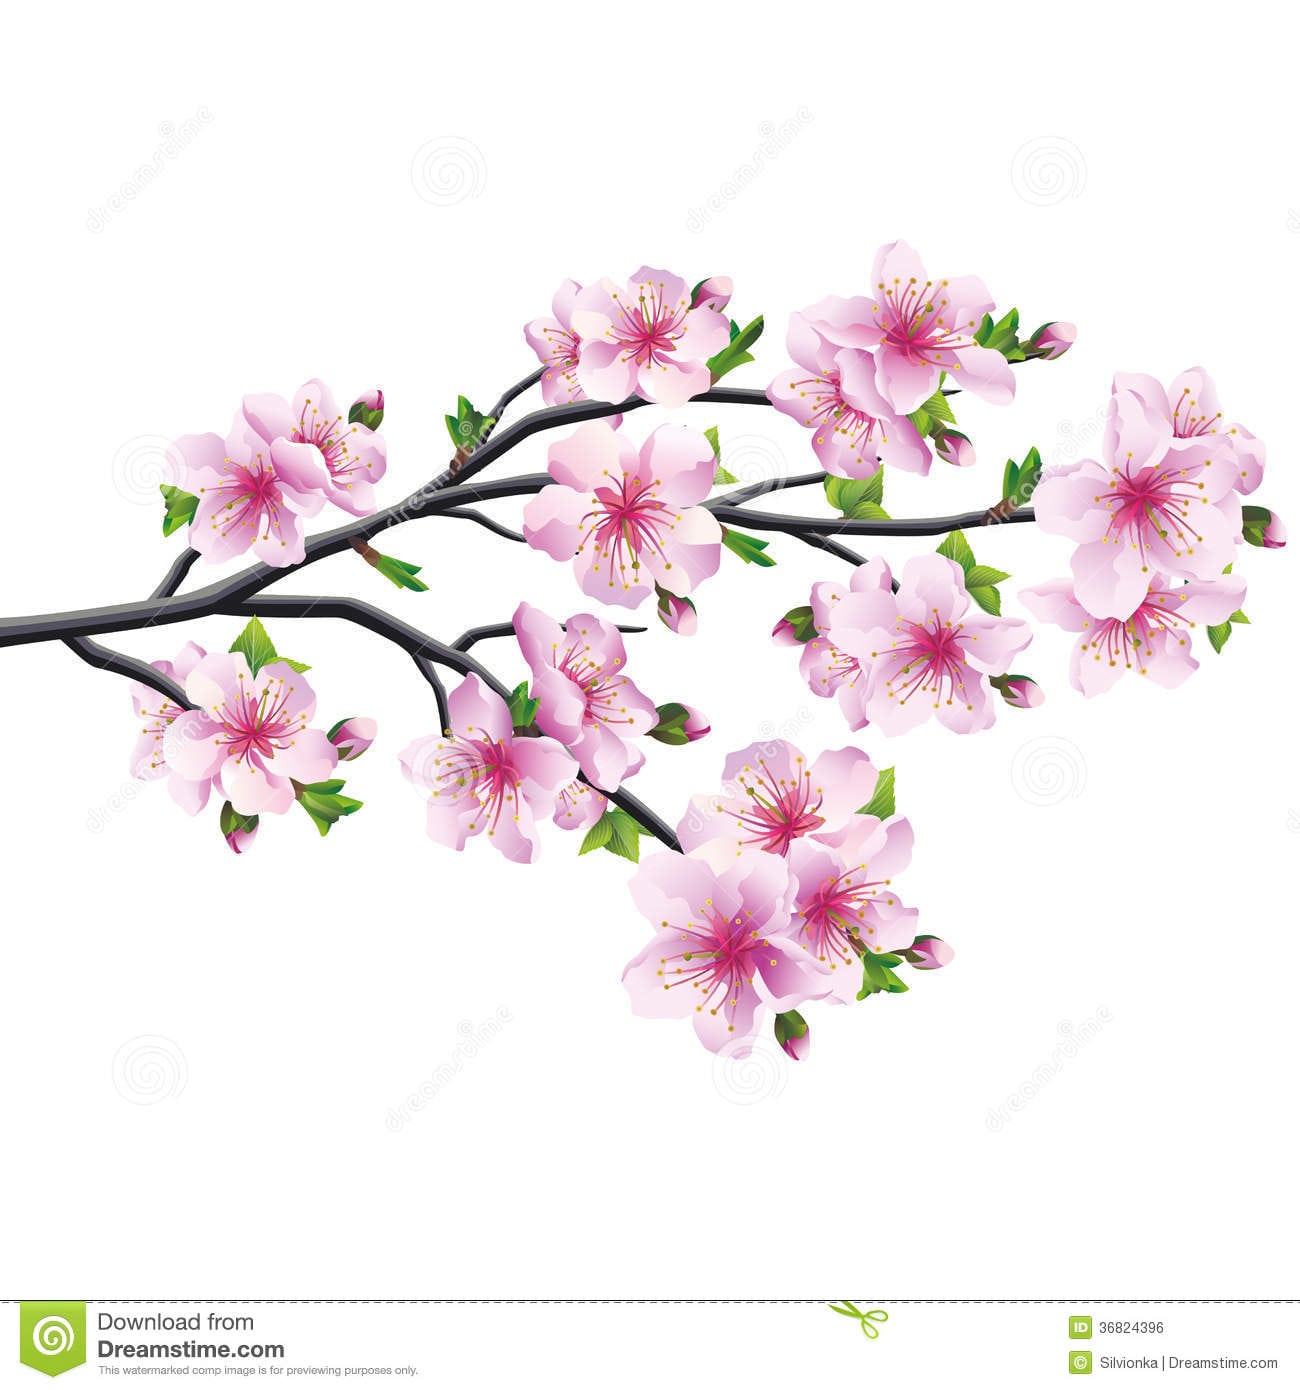 Flor De Cerejeira, Ã¡rvore Japonesa Sakura IlustraÃ§Ã£o Do Vetor